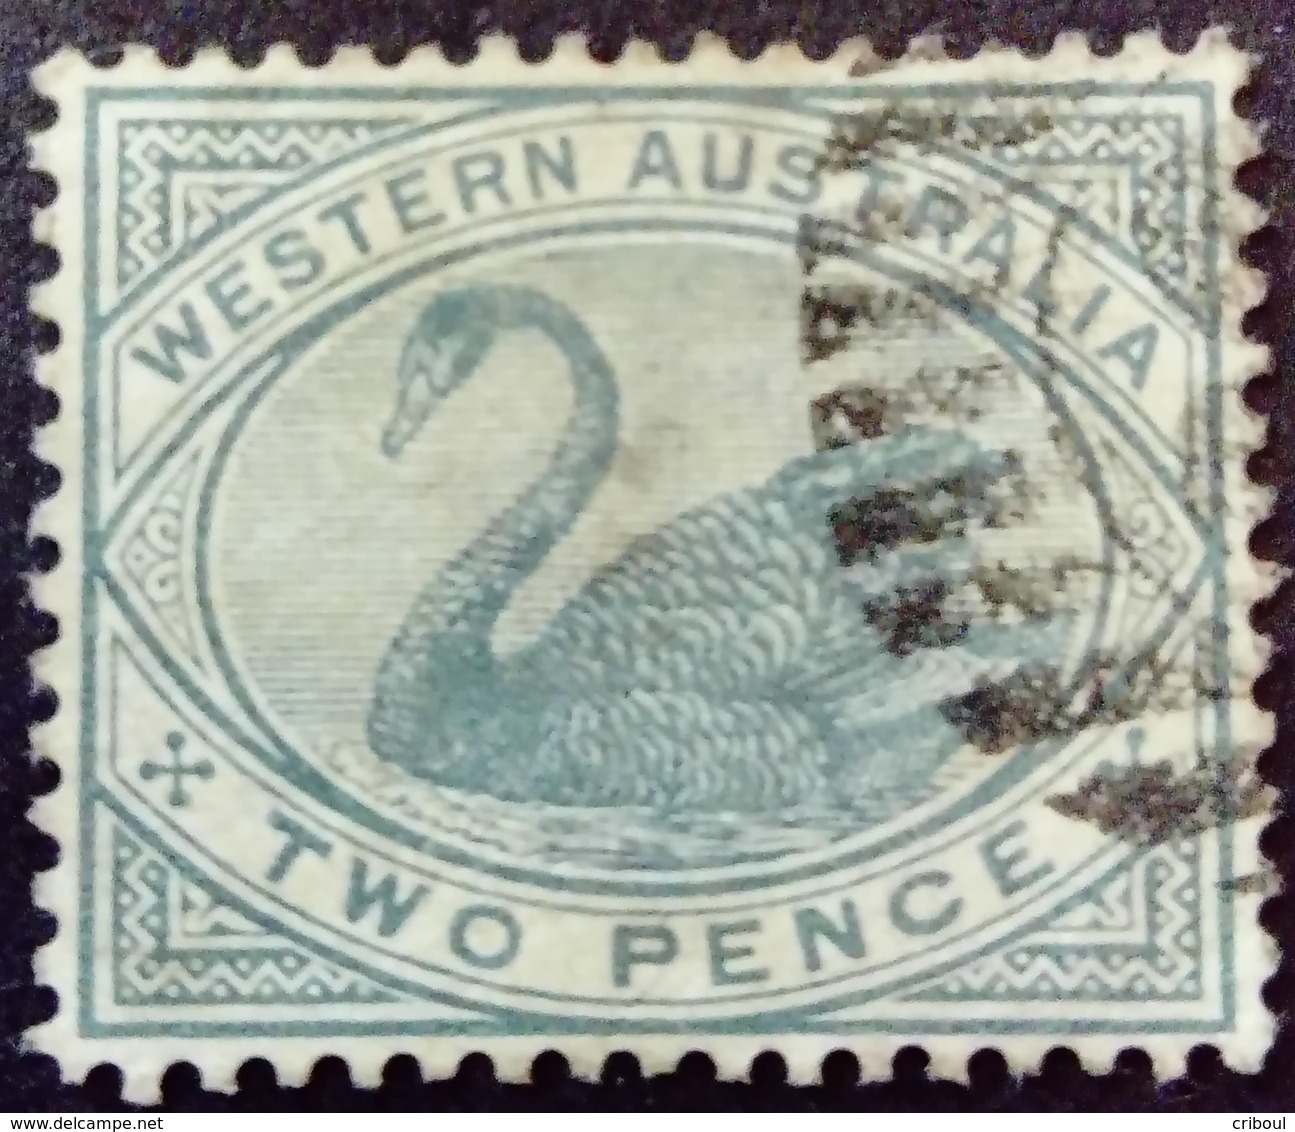 Australie Occidentale Western Australia 1885 Filigrane Couronne CA Watermark Crown CA Yvert 44 O Used - Used Stamps